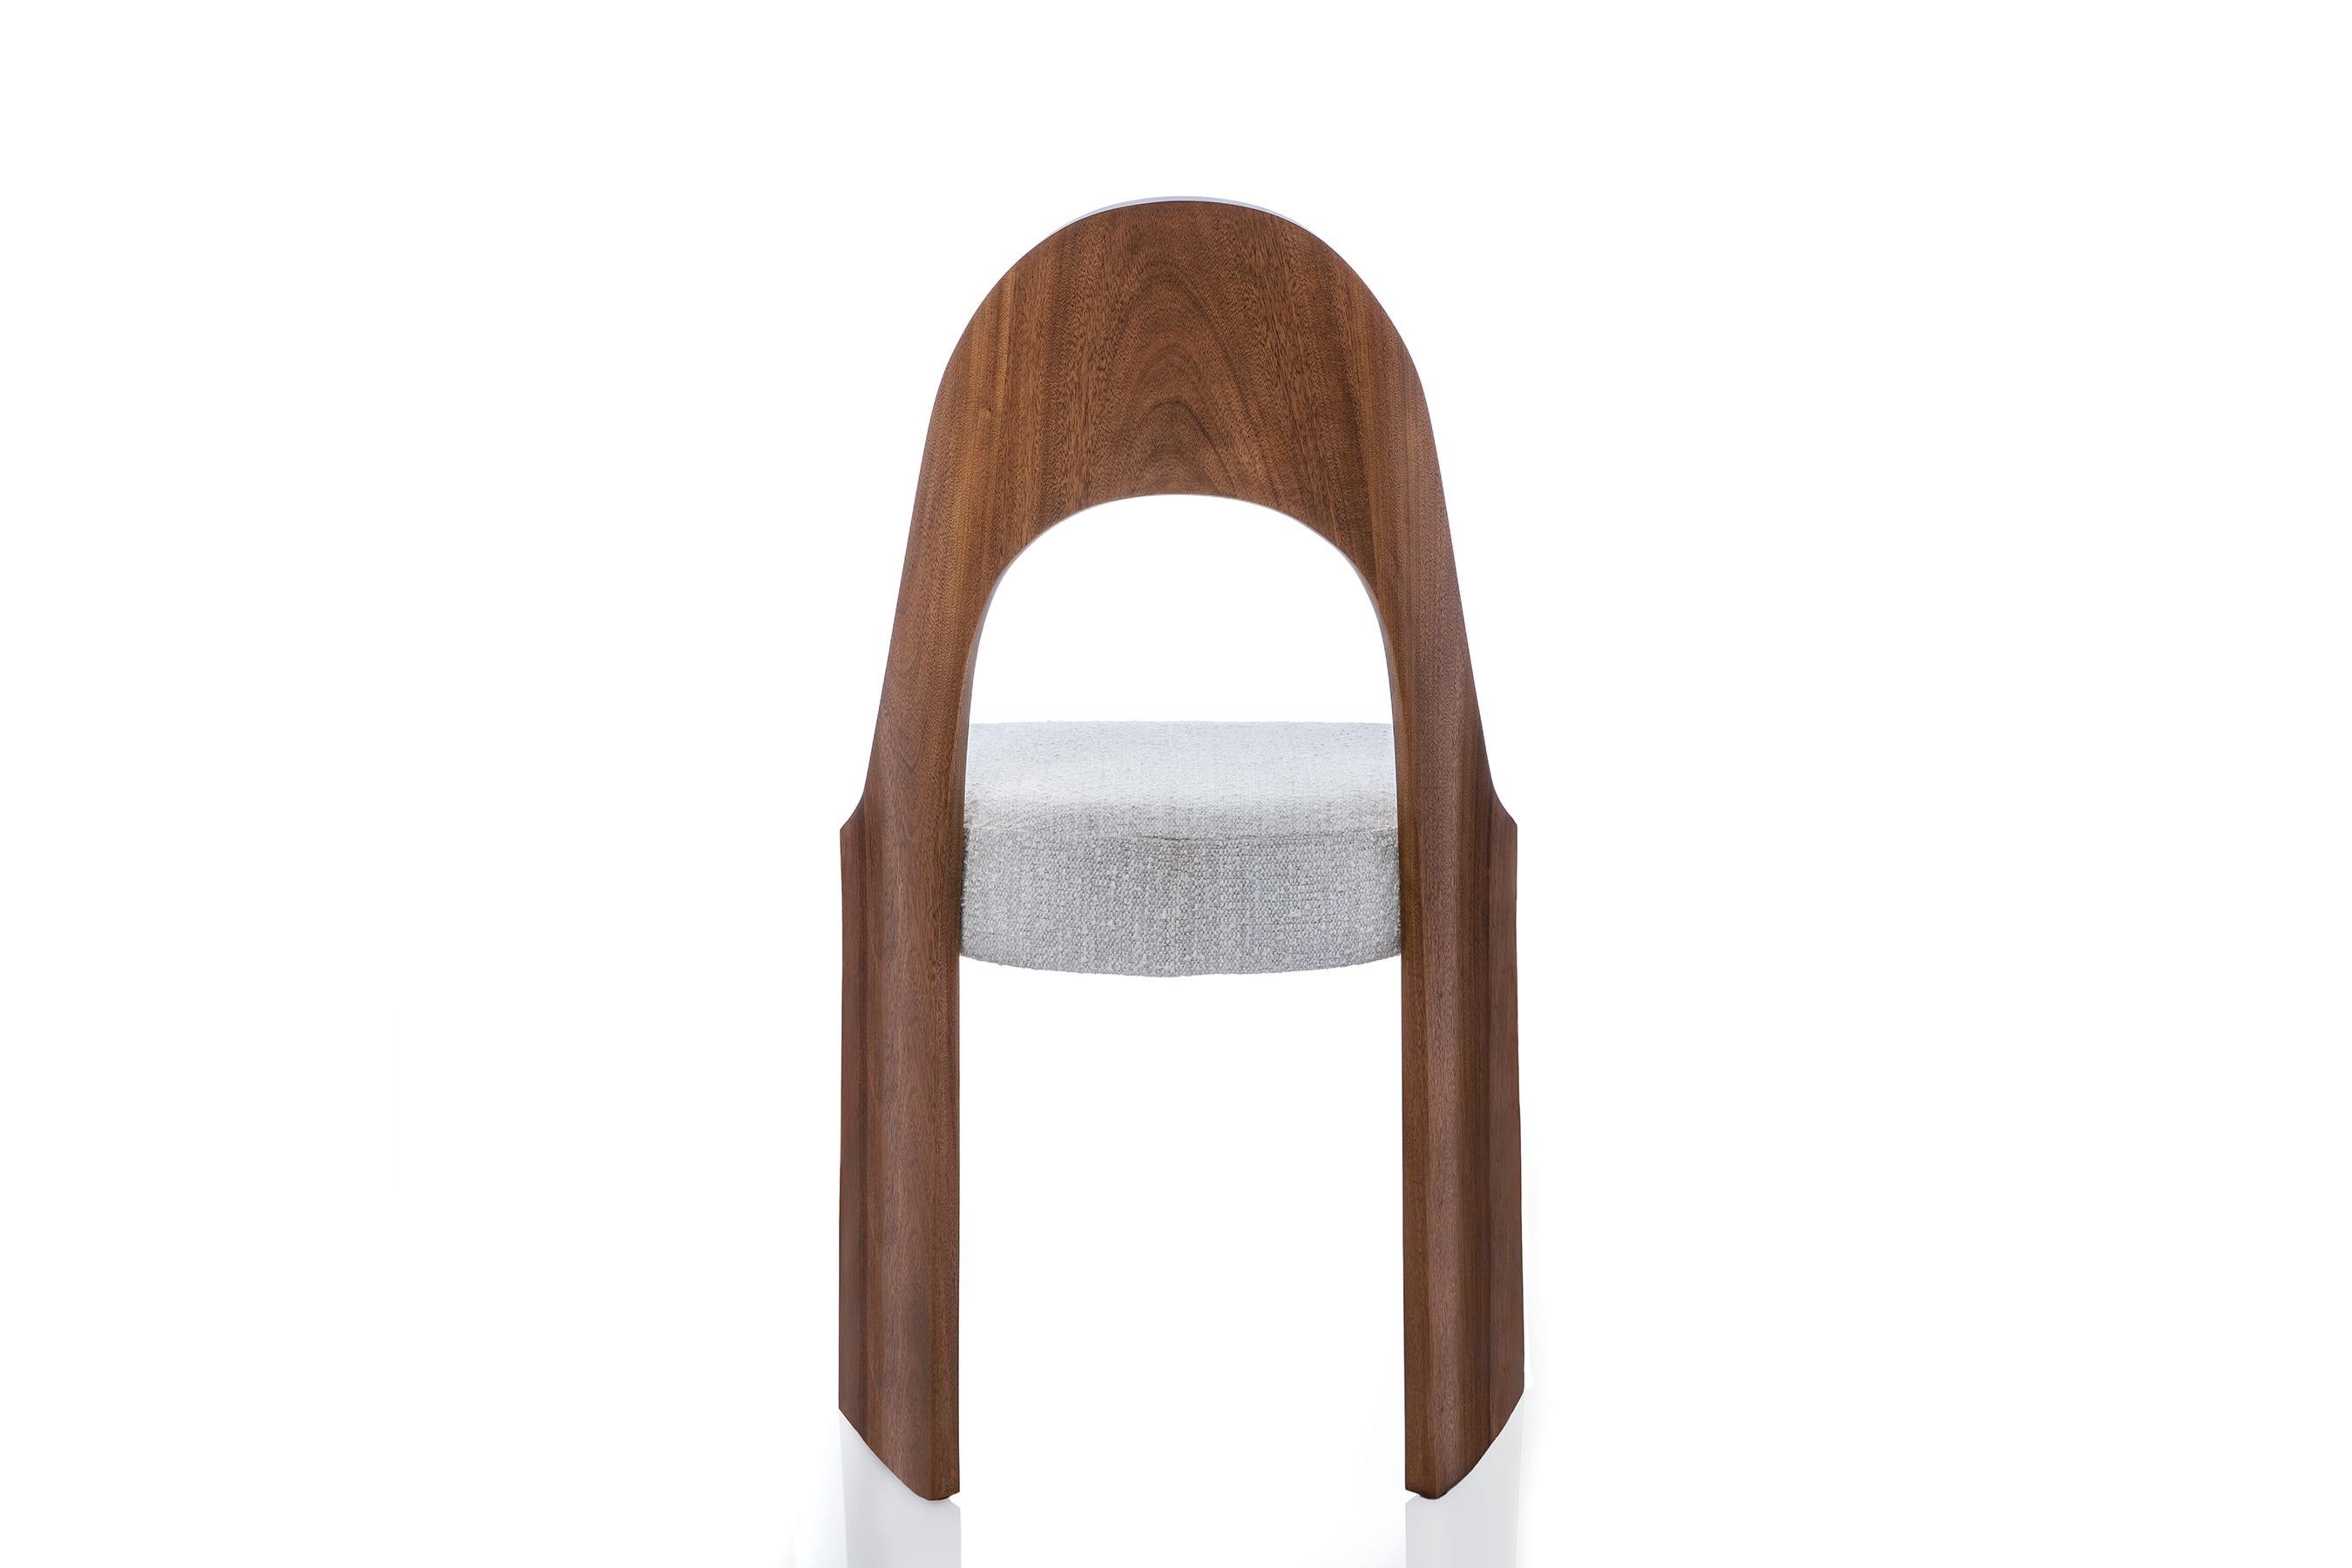 La chaise Gaia est idéale comme chaise d'appoint pour la salle à manger, mais elle peut aussi être placée presque n'importe où comme 